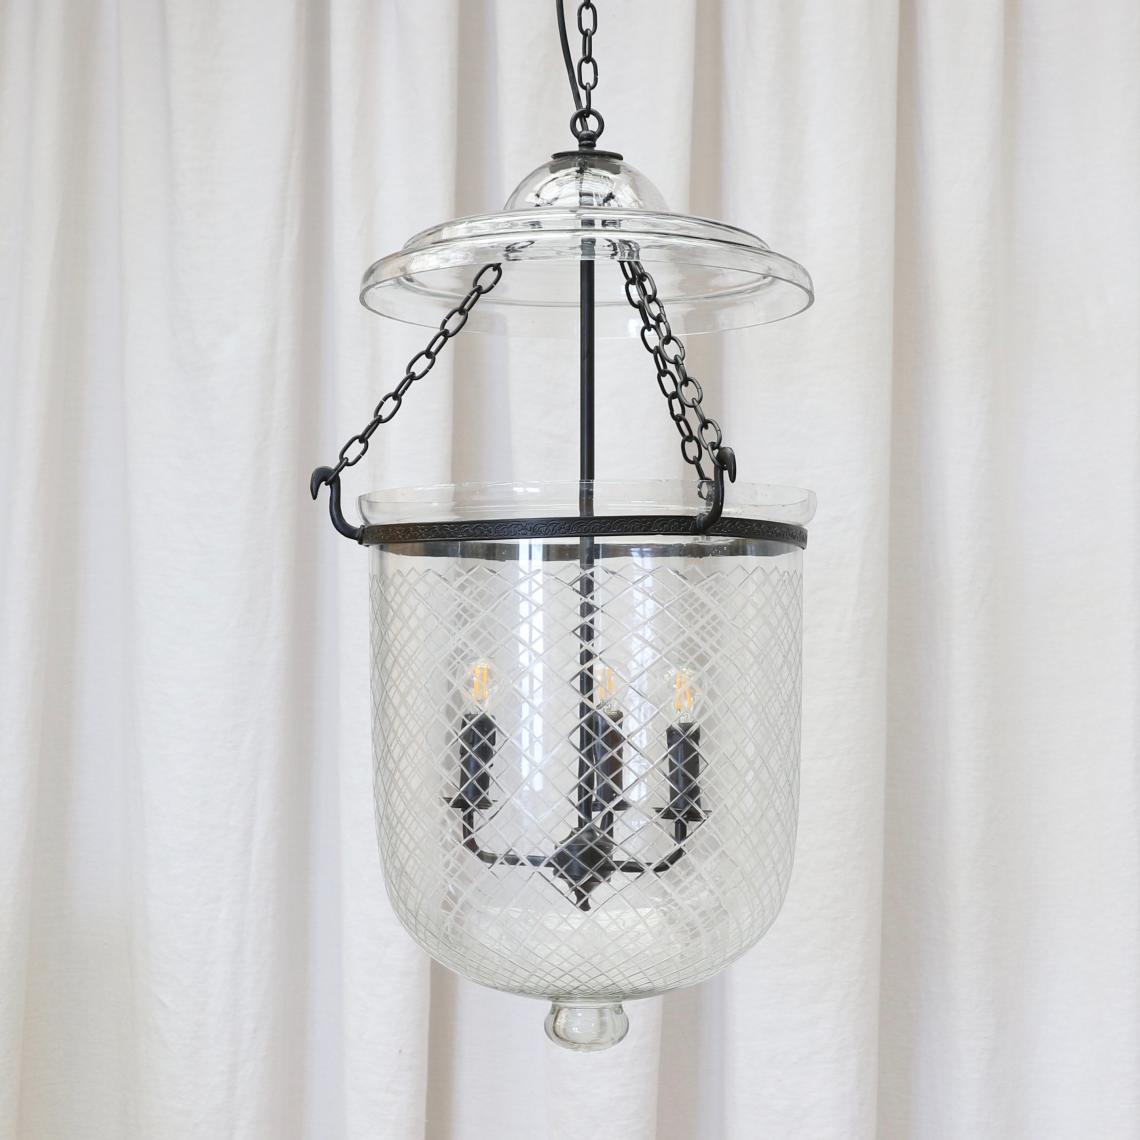 111-79 - Bell Jar Lantern / Engraved